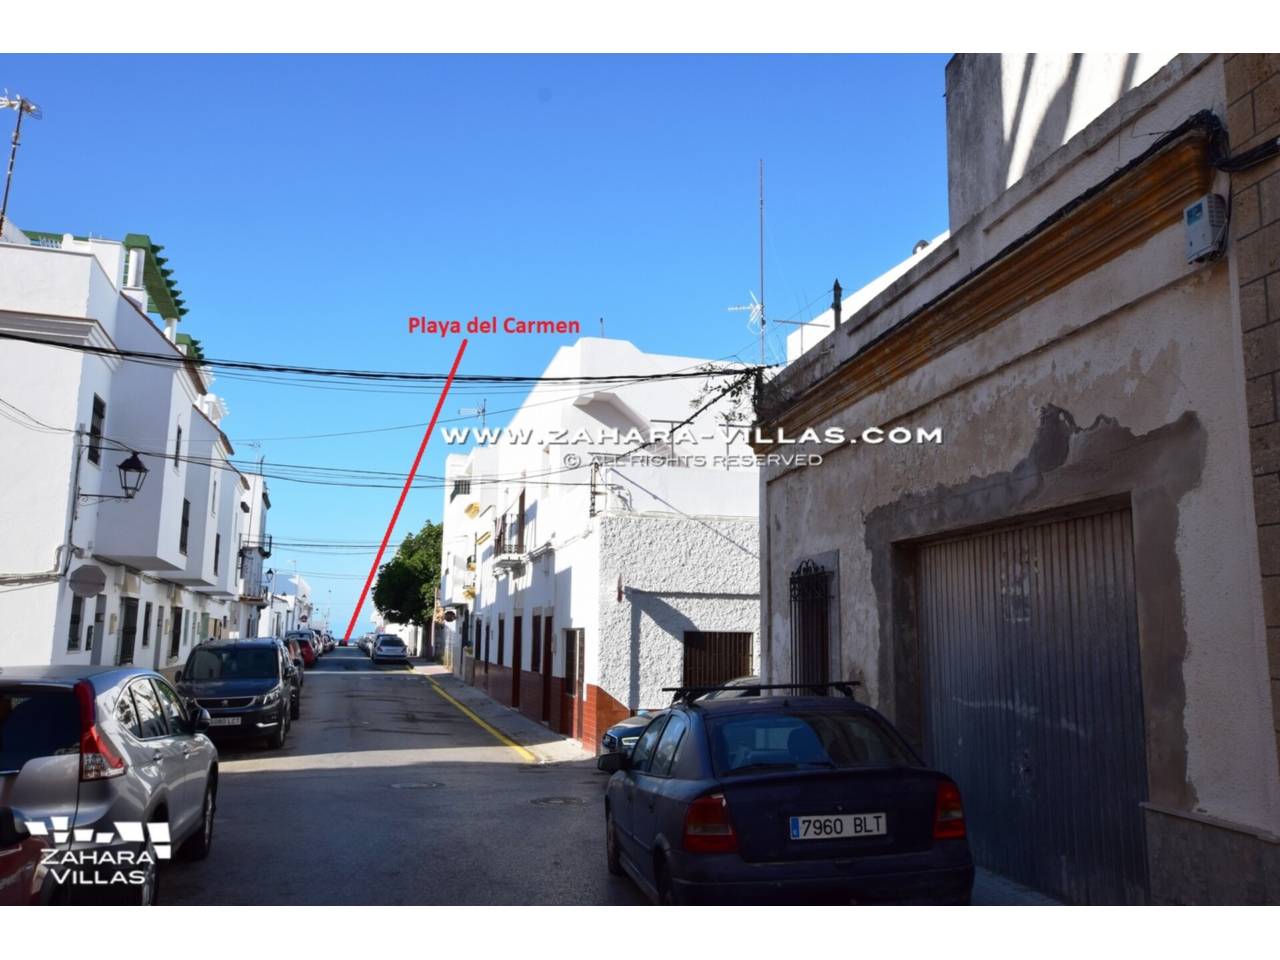 Imagen 3 de Gebäude zu verkaufen in Barbate, ganz in der Nähe des Strandes von Playa del Carmen